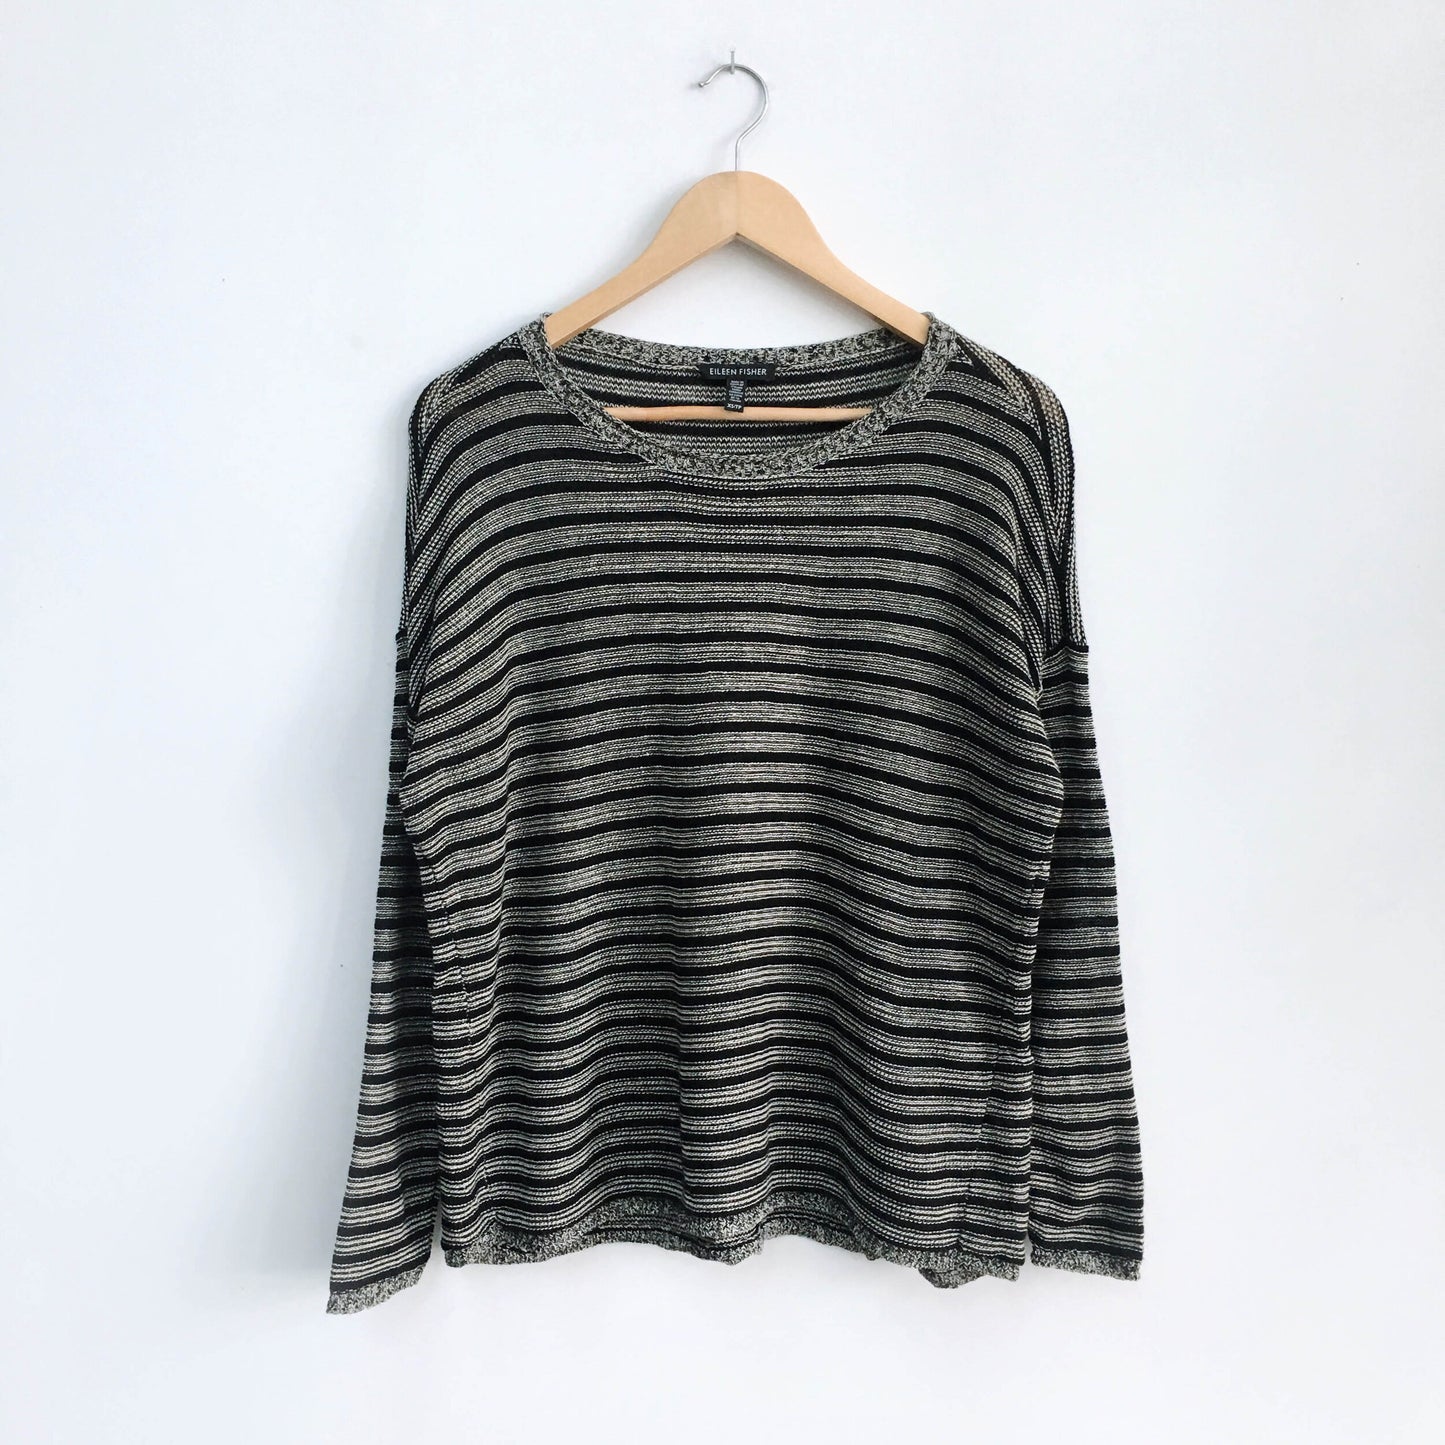 Eileen Fisher wool-linen Sweater - size xs